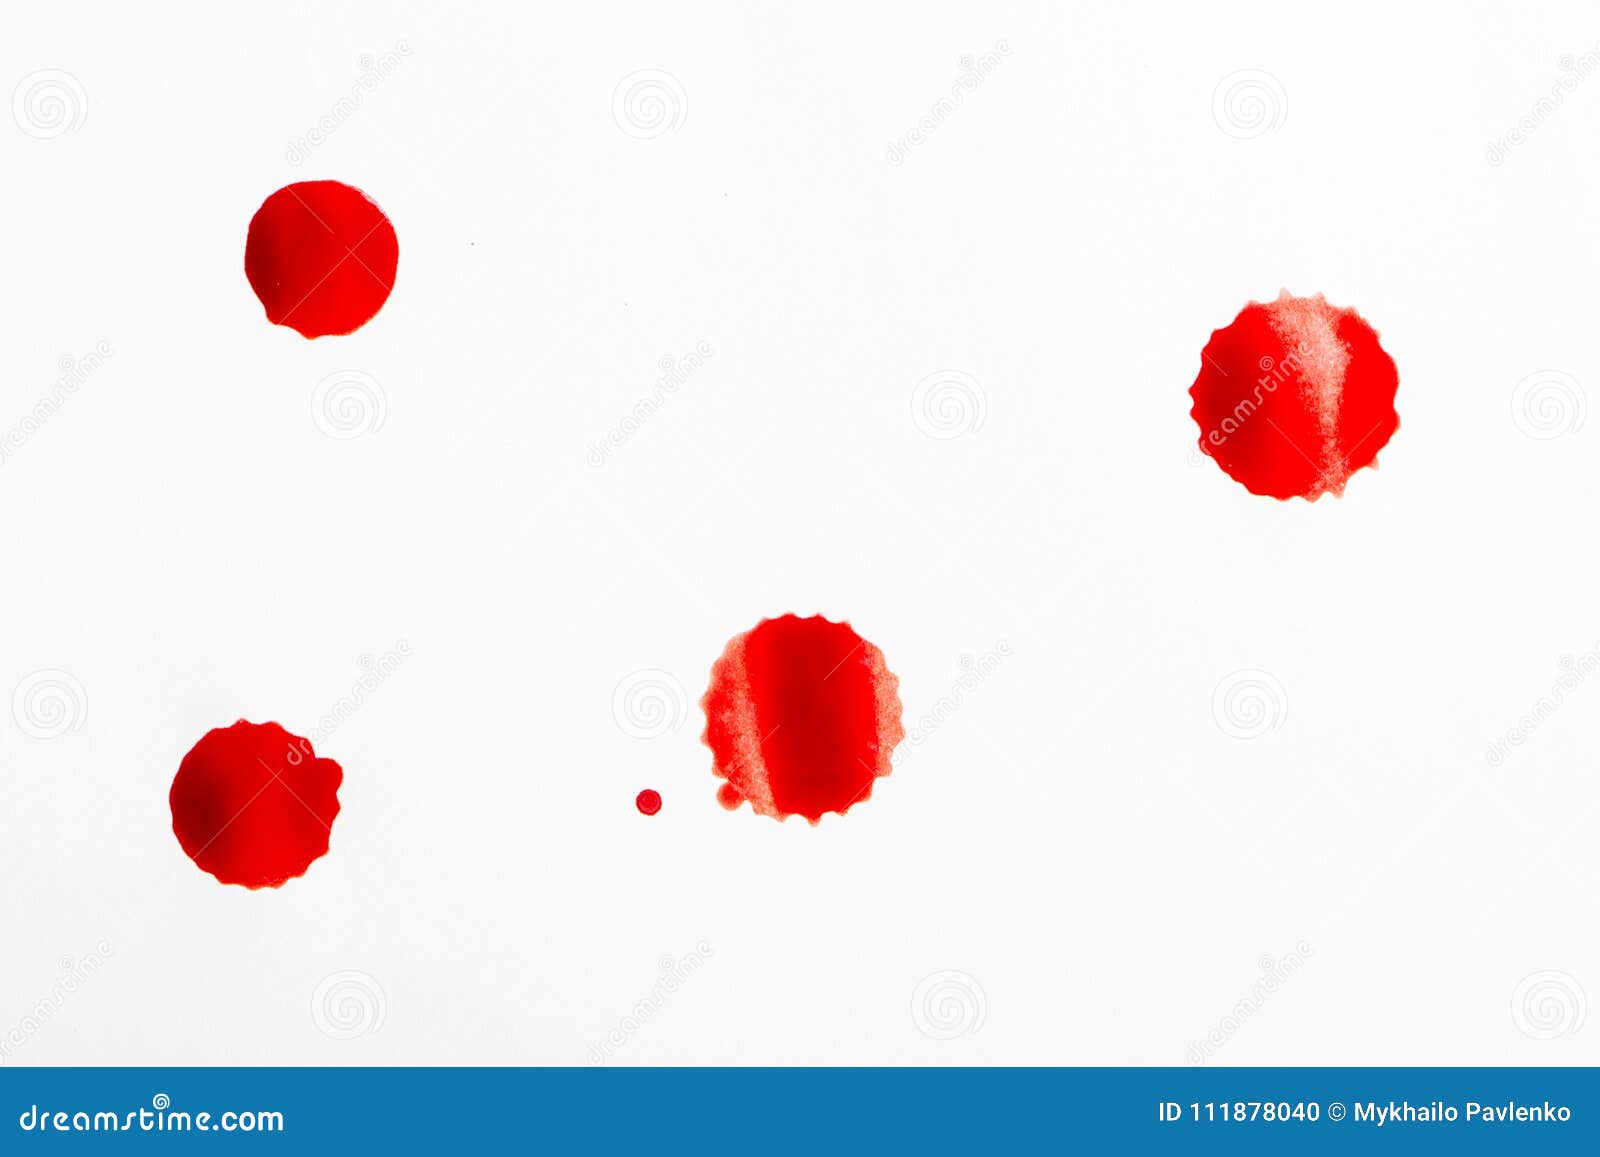 Кровь на туалетной бумаге мужчина. Алая кровь на туалетной бумаге. Красная кровь на туалетной бумаге.